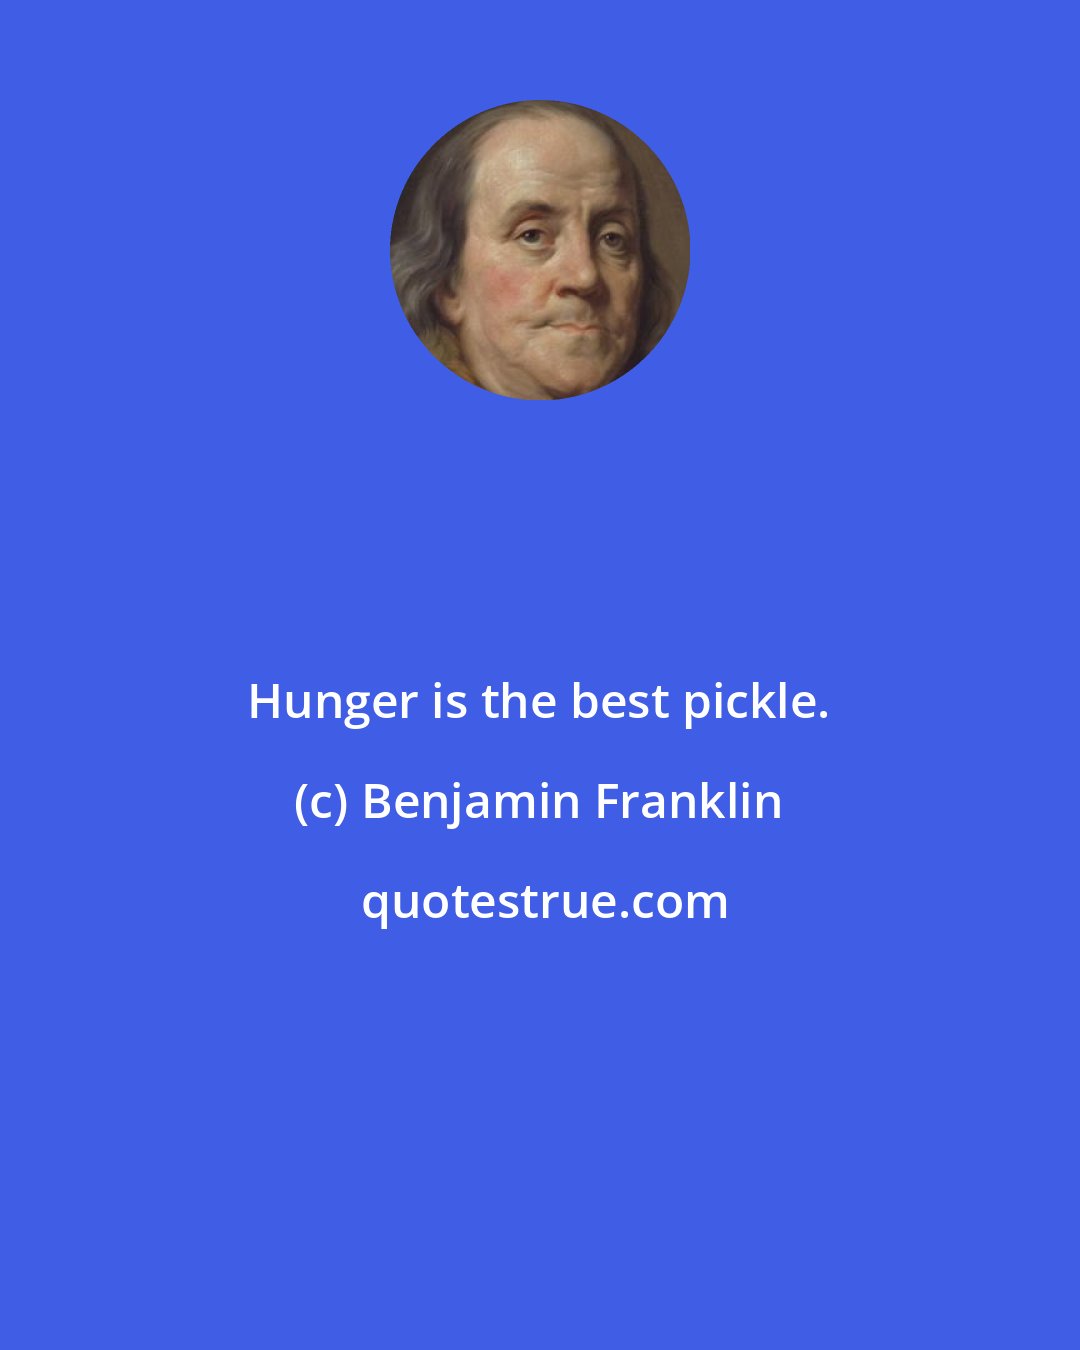 Benjamin Franklin: Hunger is the best pickle.